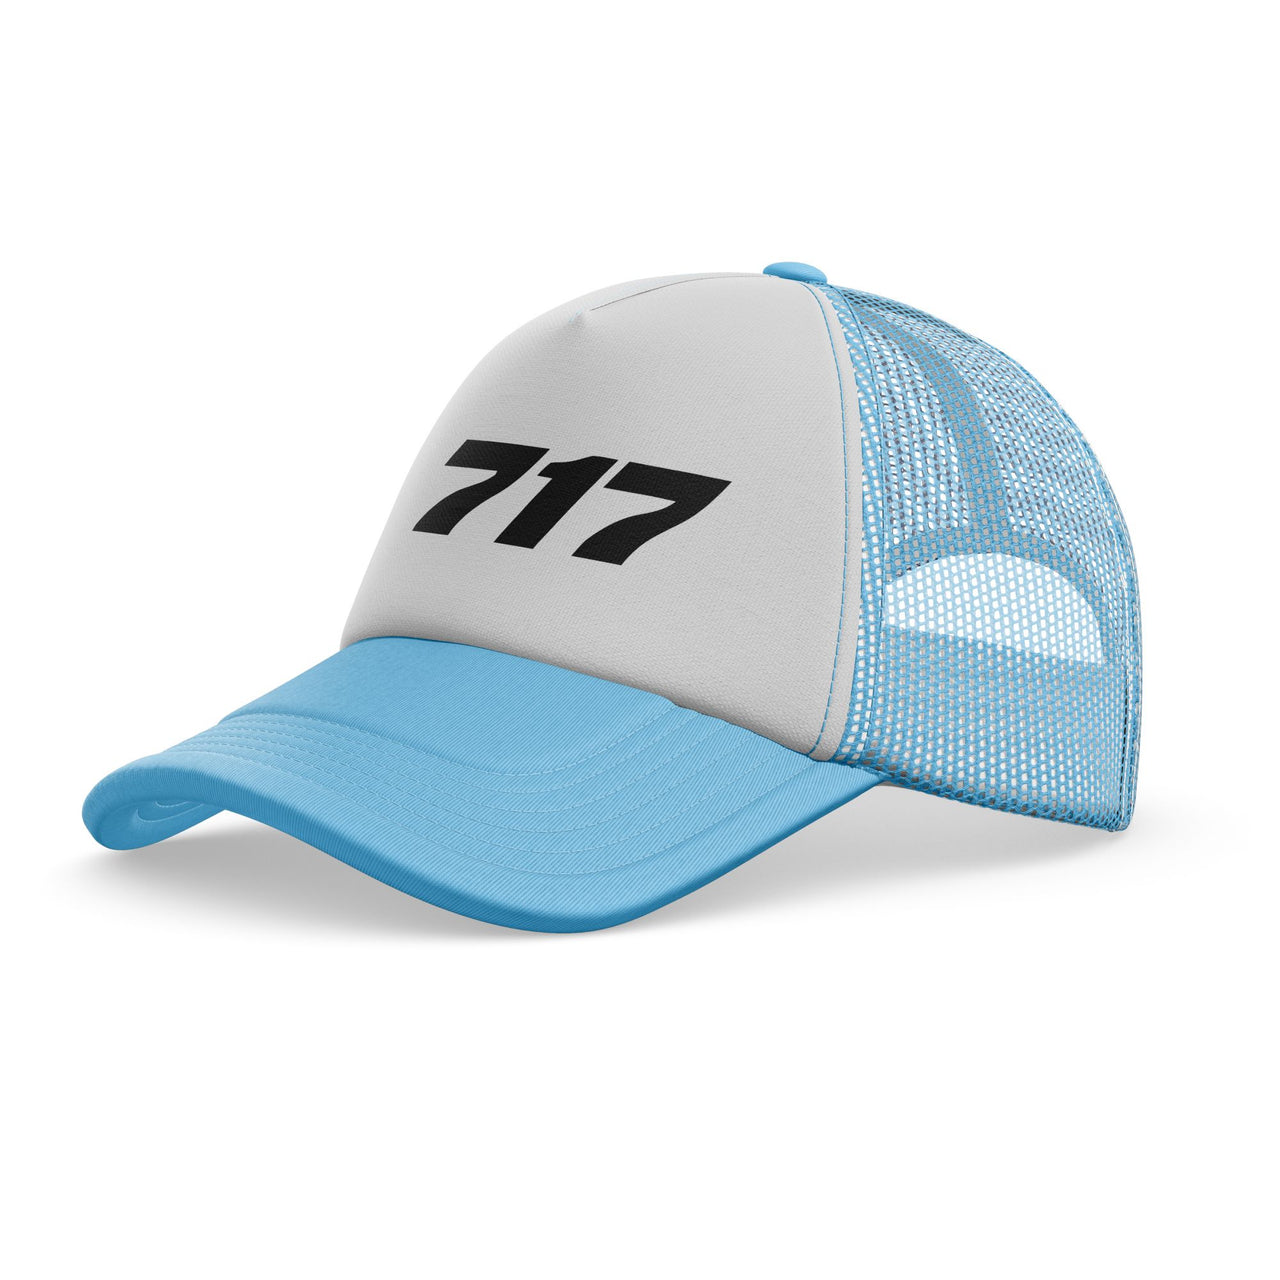 717 Flat Text Designed Trucker Caps & Hats